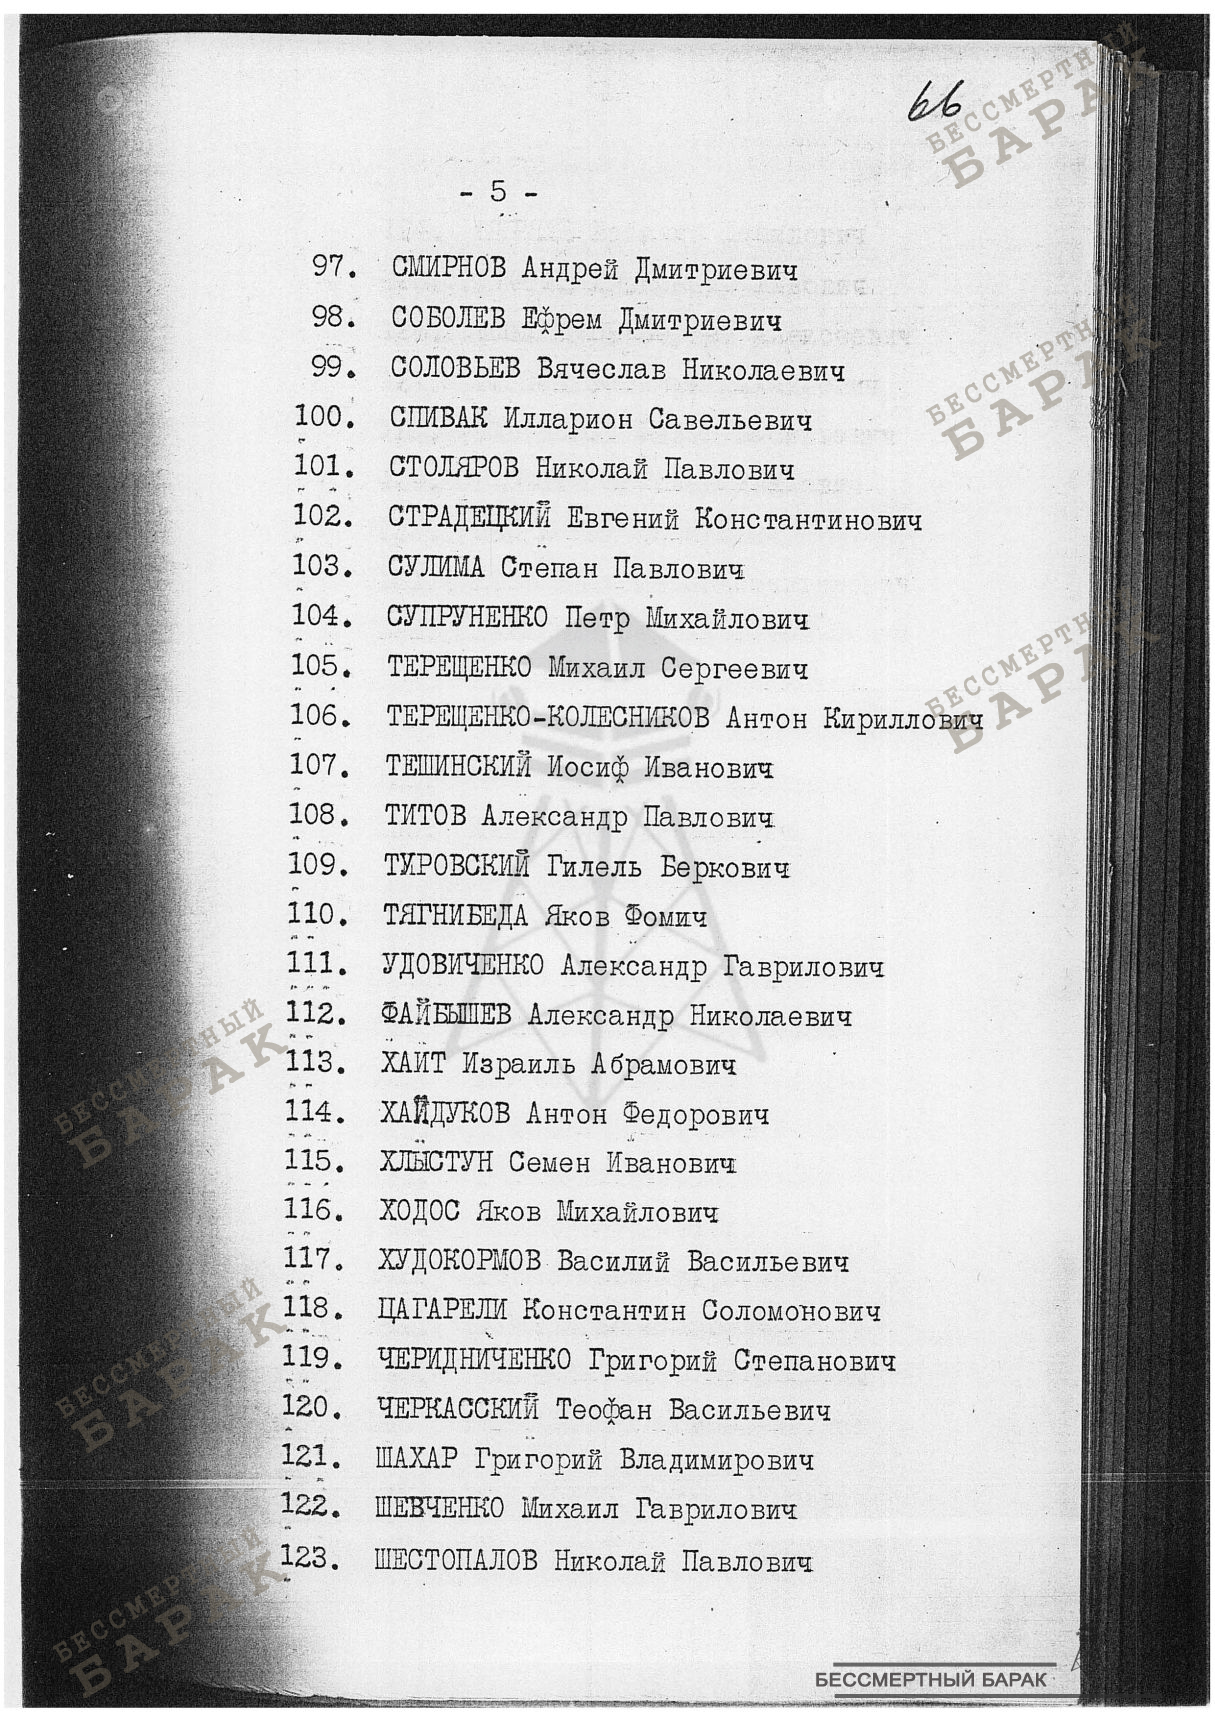 Сталинские списки: список лиц от 12 сентября 1938 года. Украинская ССР